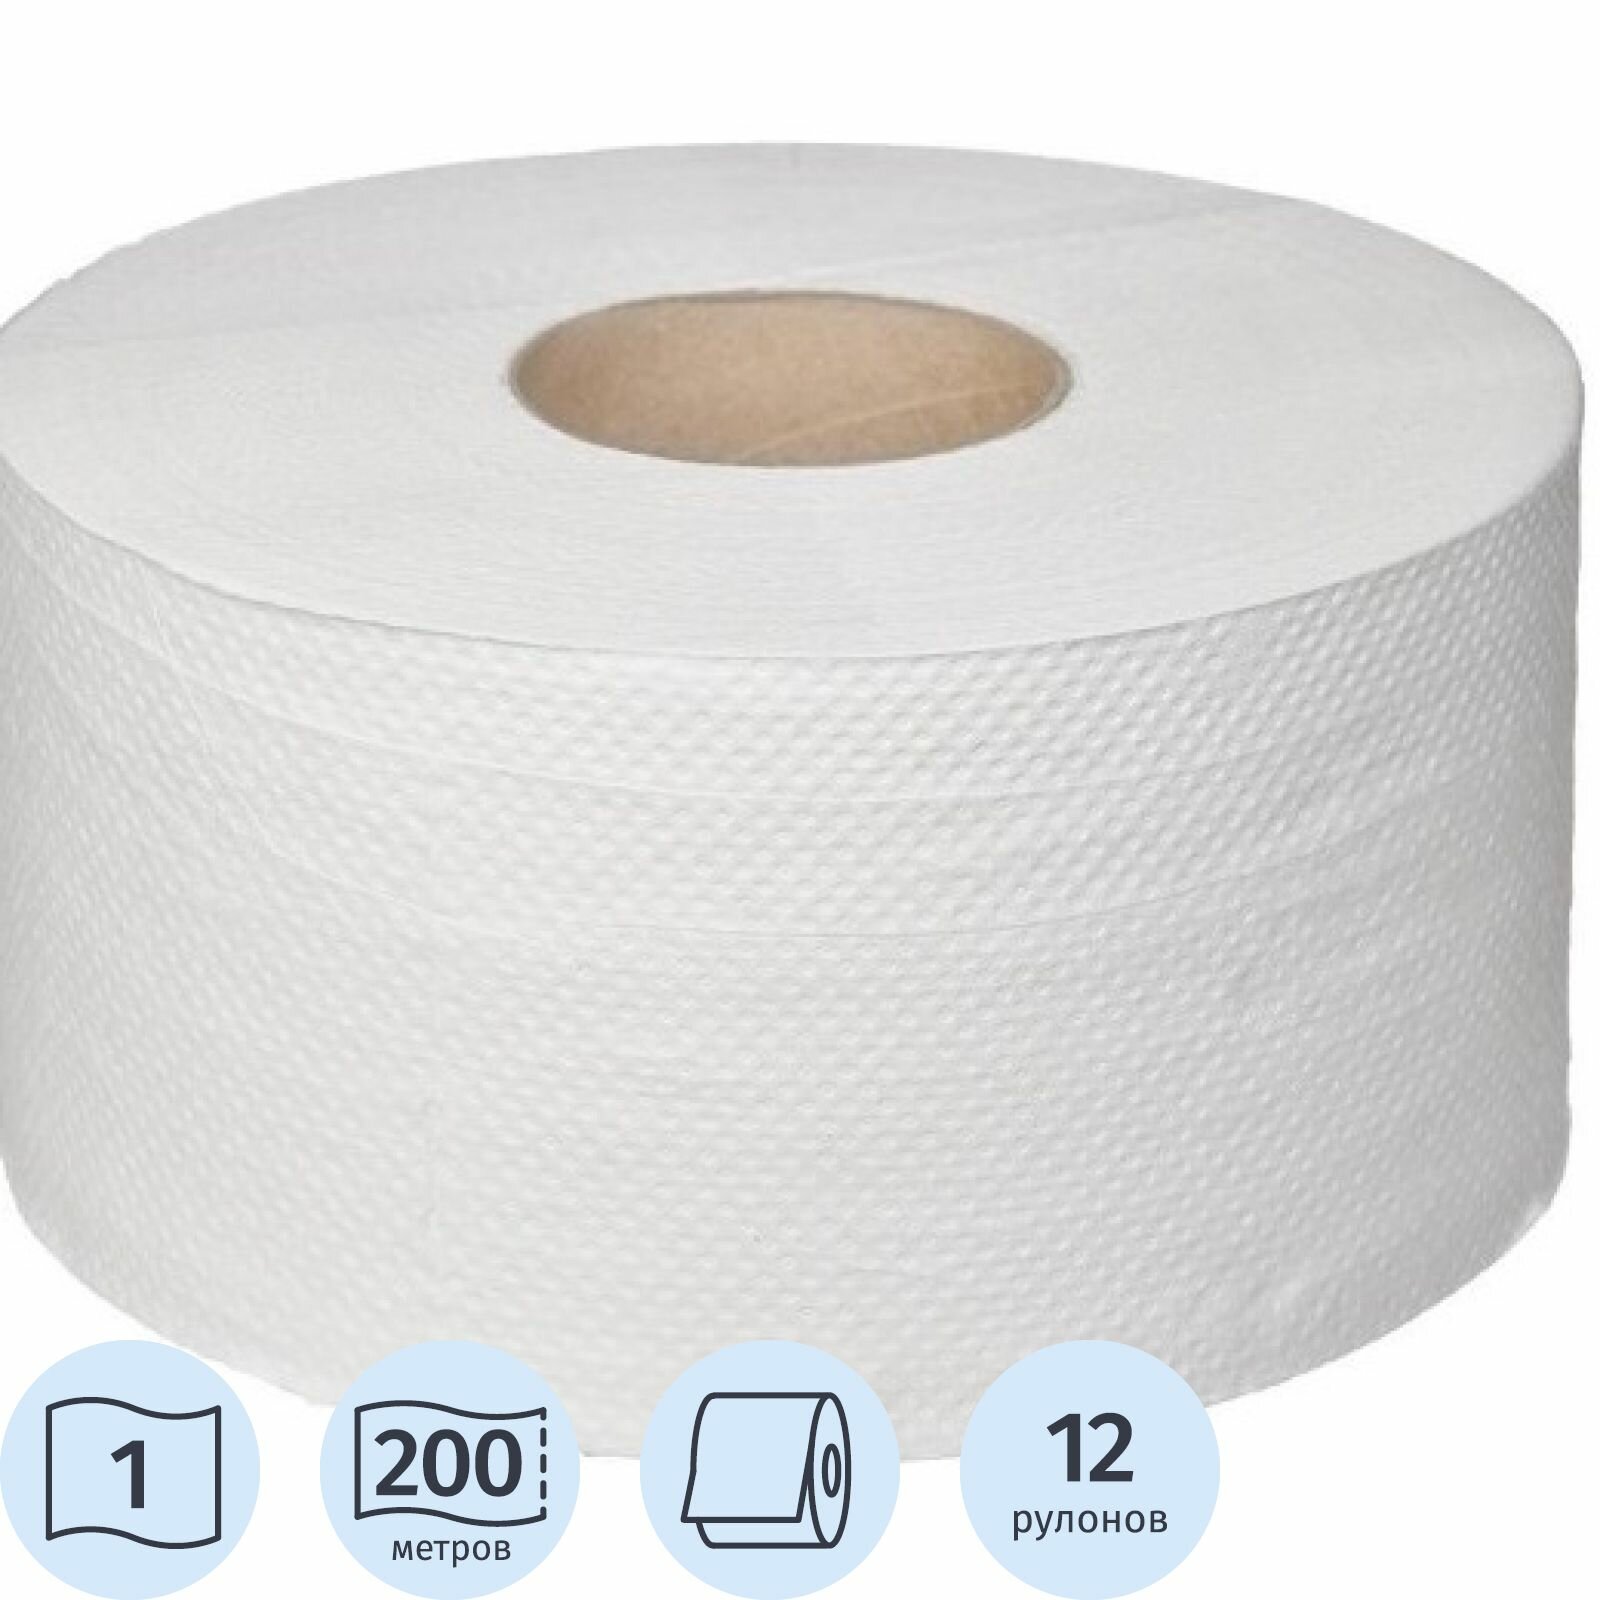 Туалетная бумага Luscan Professional, для диспенсера, 1 слой, 12 рулонов по 200 метров